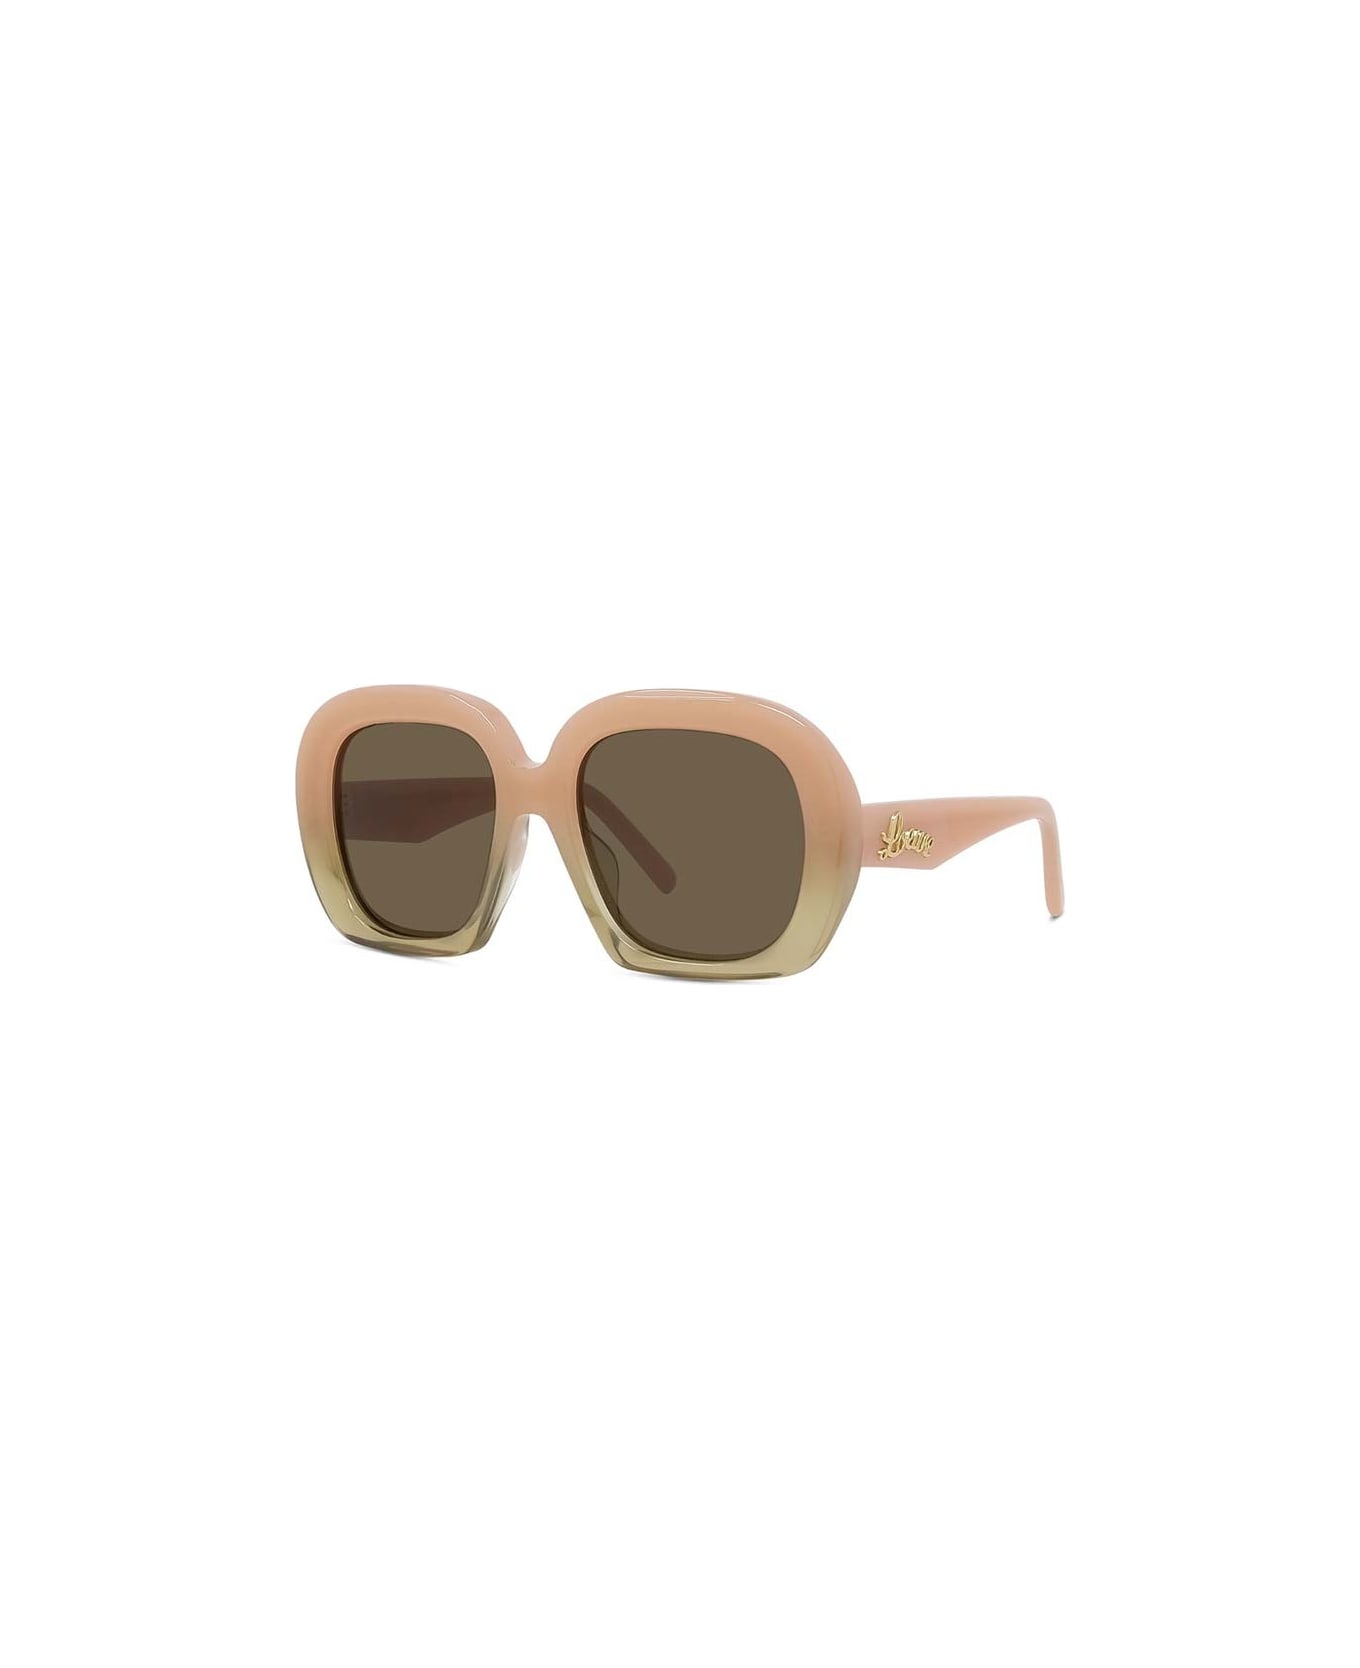 Loewe Sunglasses - Rosa chiaro/Marrone